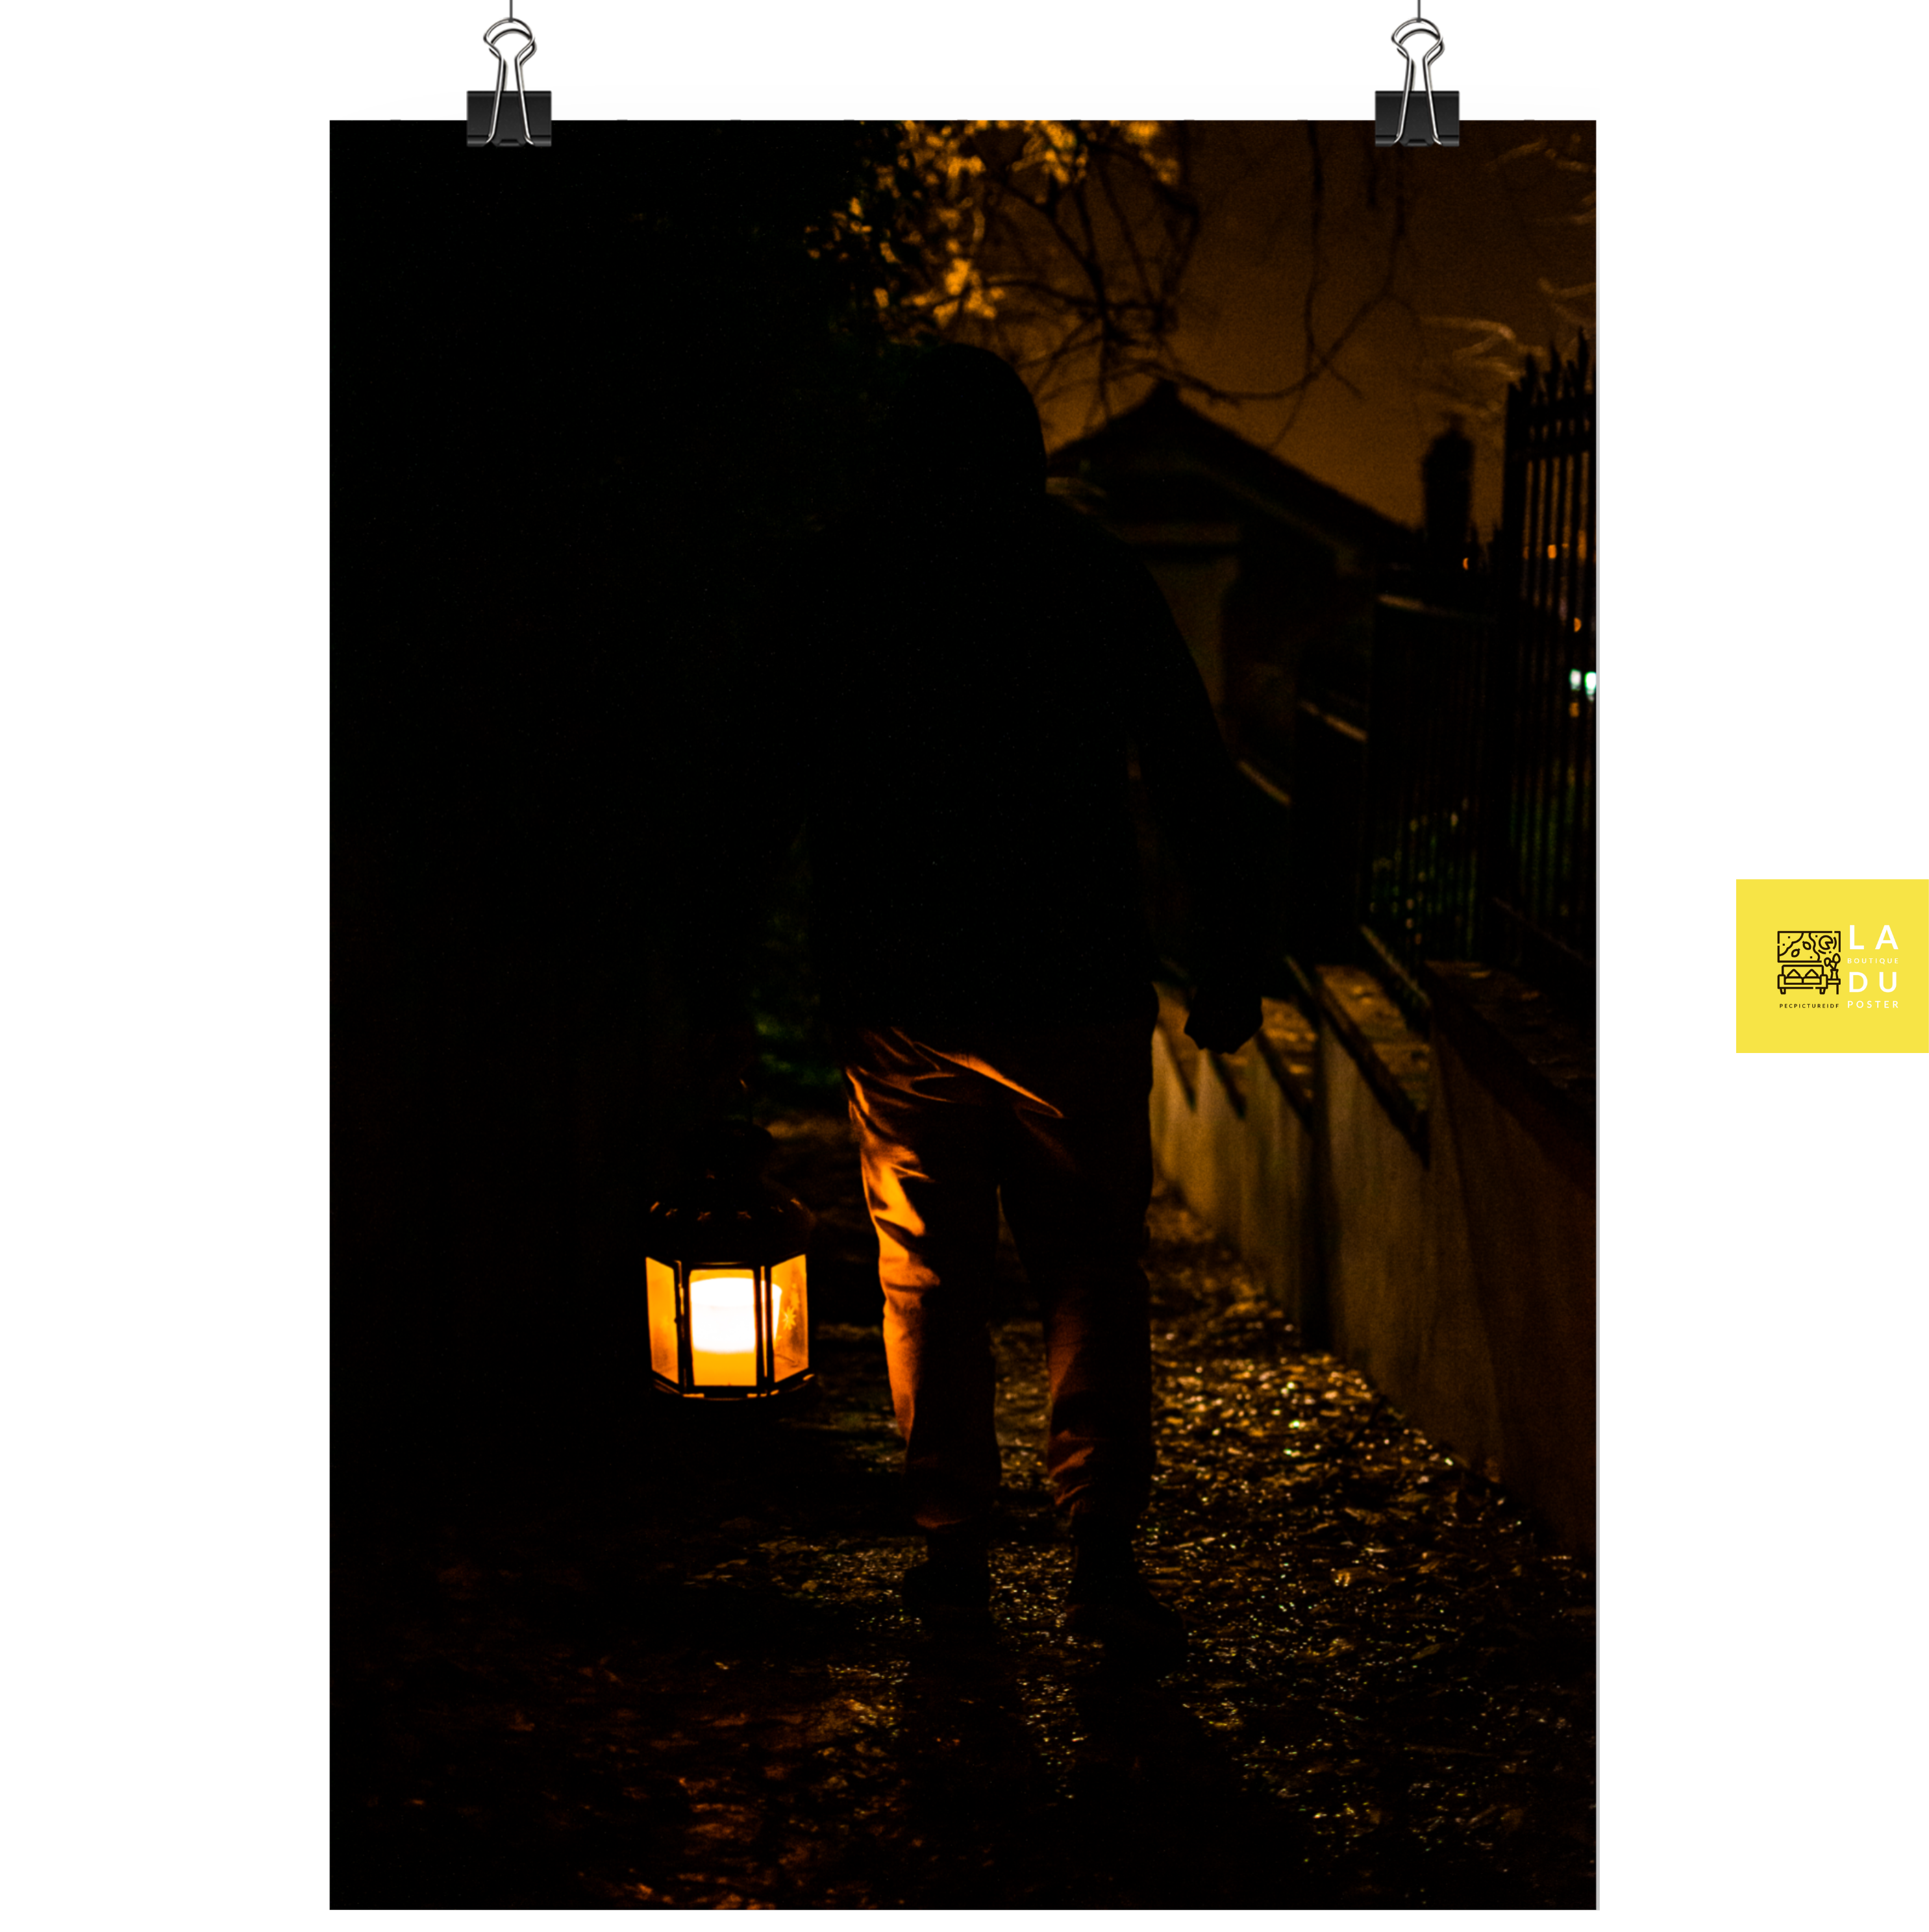 "La lanterne de Hagrid" - Poster de photographie : Un homme descend un chemin étroit en ville de nuit, éclairé par une lanterne, permettant une ambiance mystérieuse et captivante.